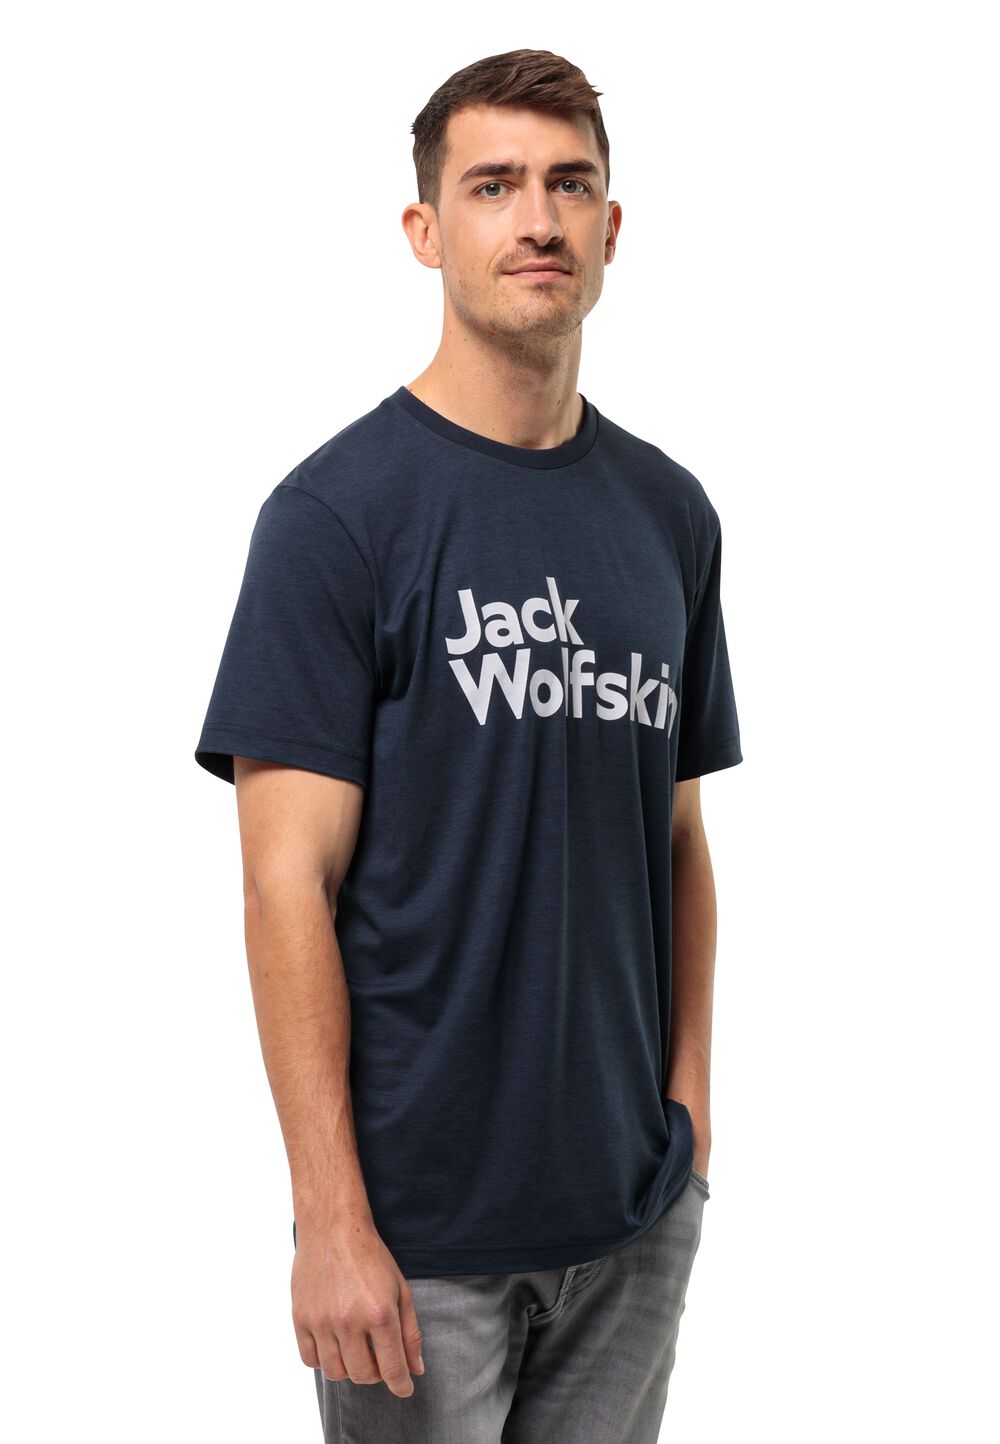 Jack Wolfskin Brand T-Shirt Men Functioneel shirt Heren 3XL blue night blue